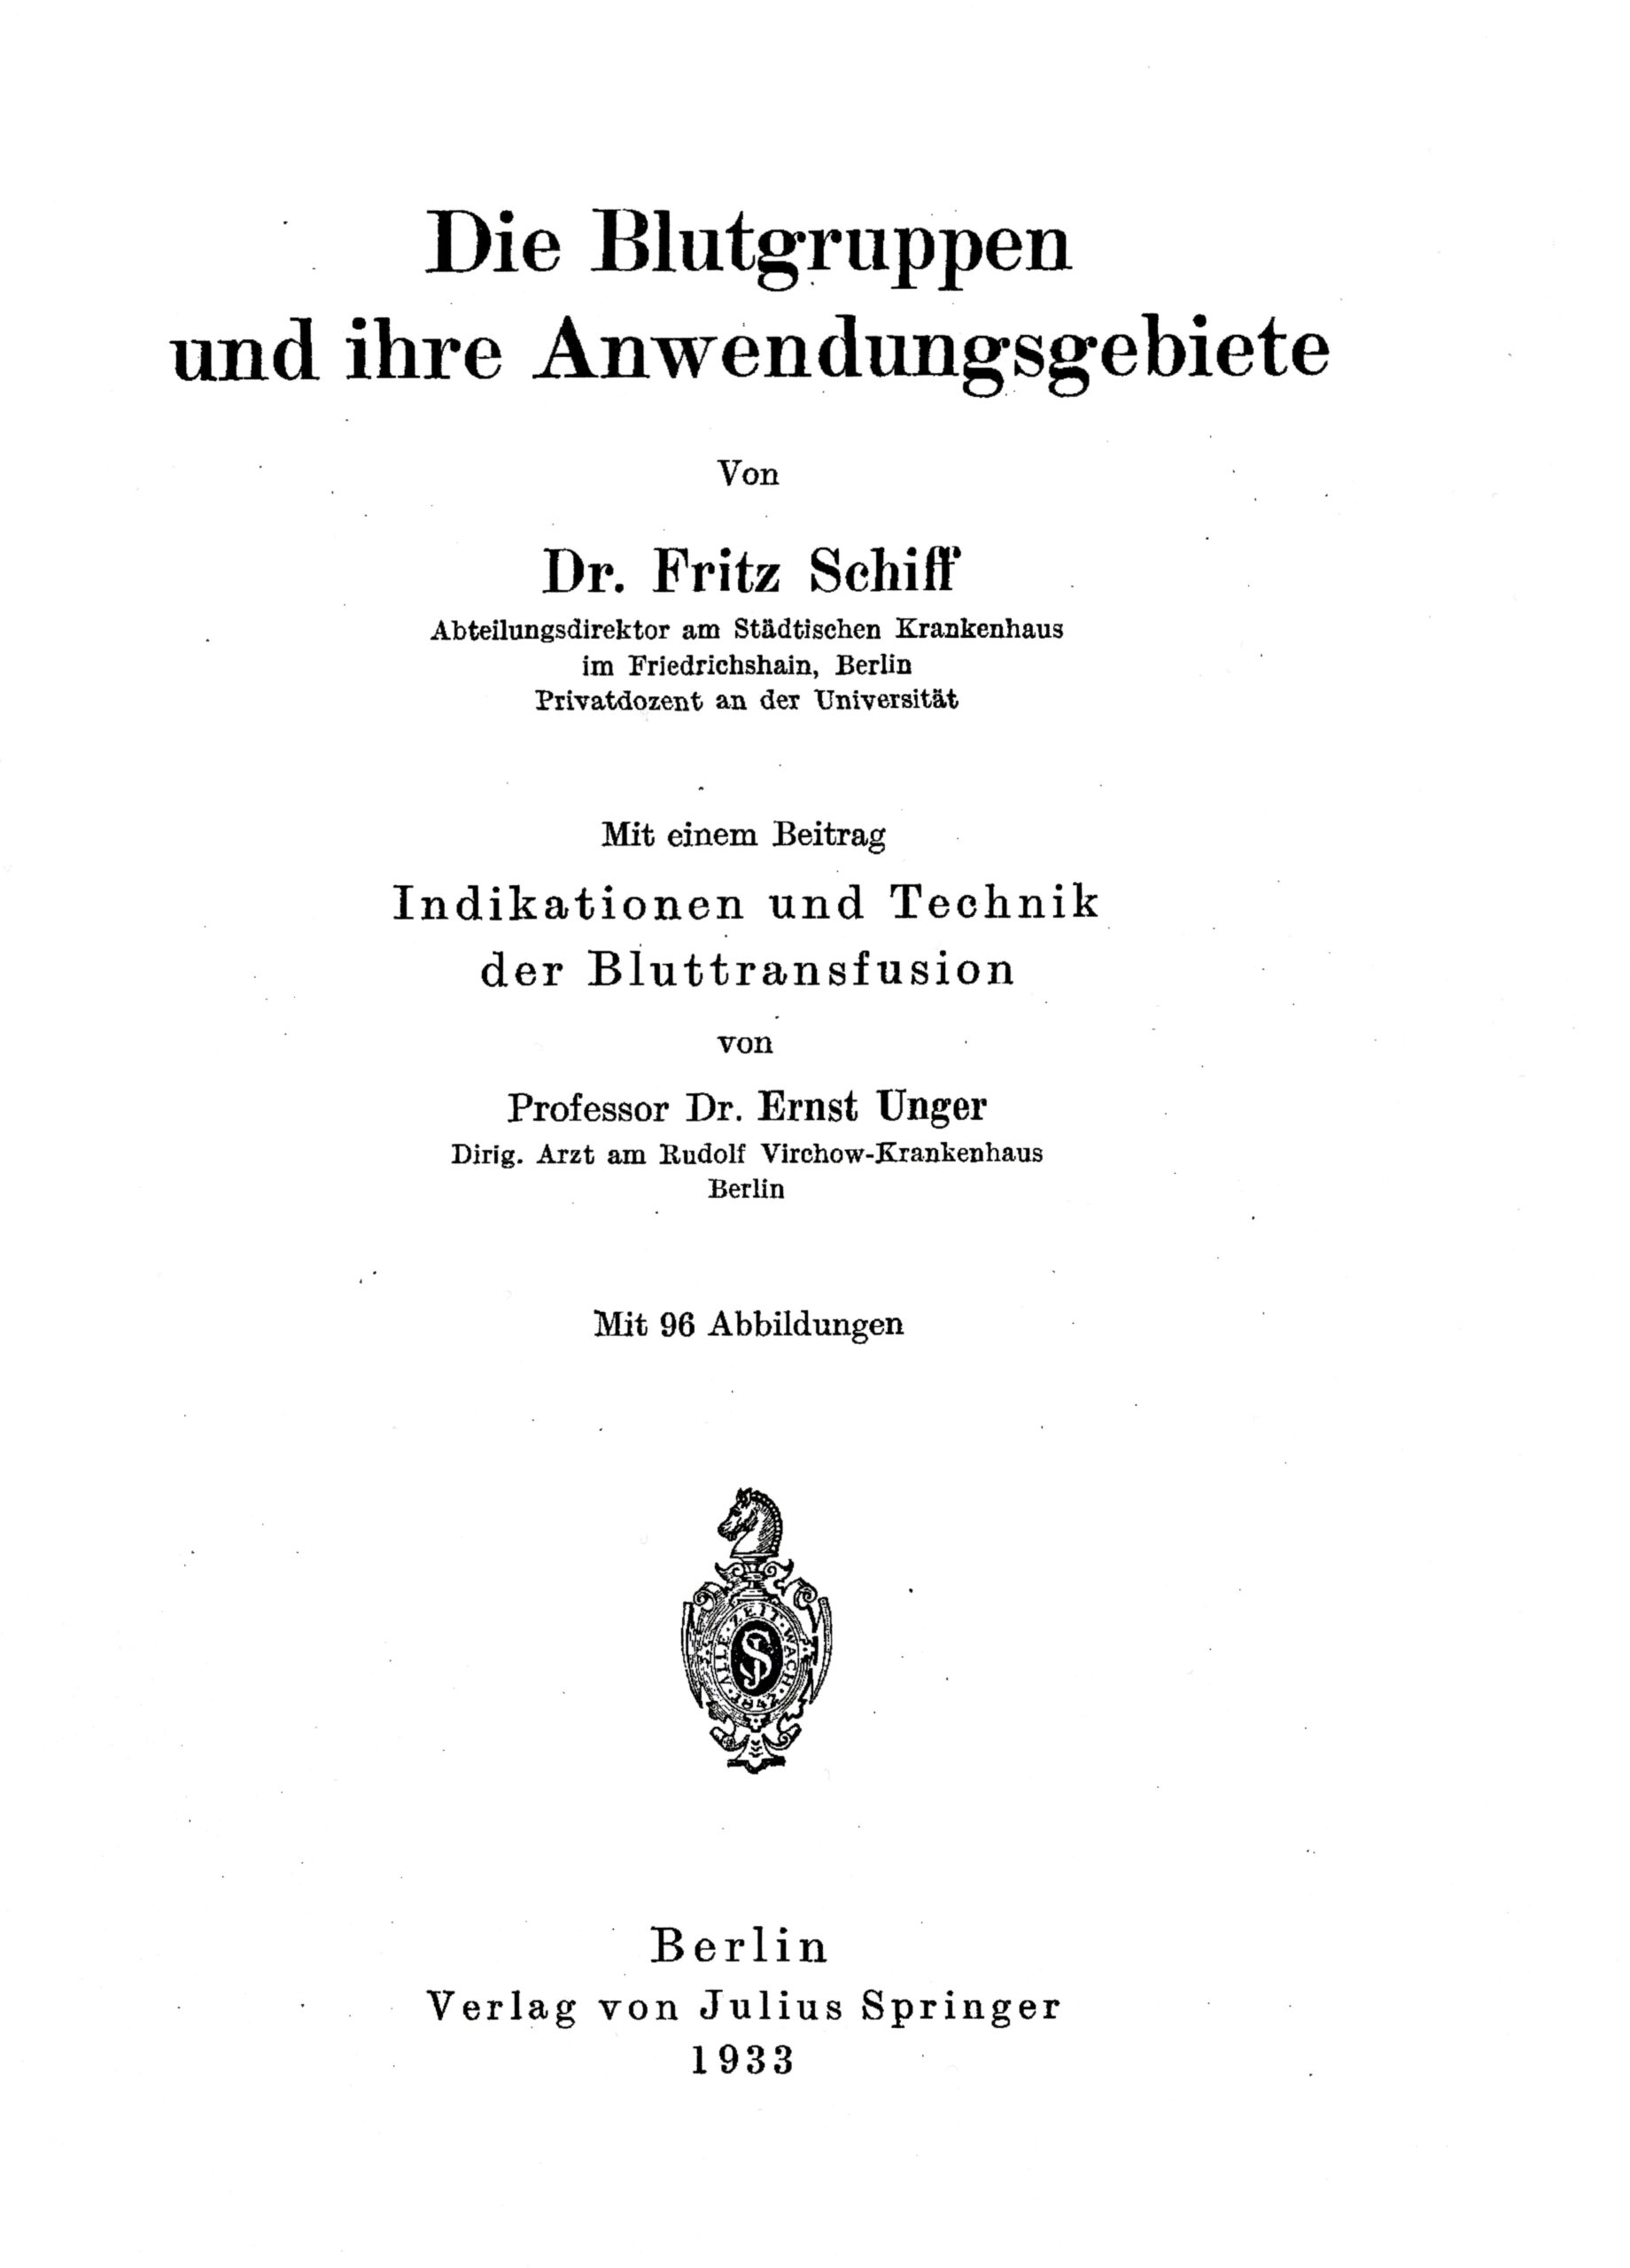 Ungers Beitrag zur Indikation und Technik der Bluttransfusion 1933, Titelblatt des Buches von Fritz Schiff, Archiv H Je